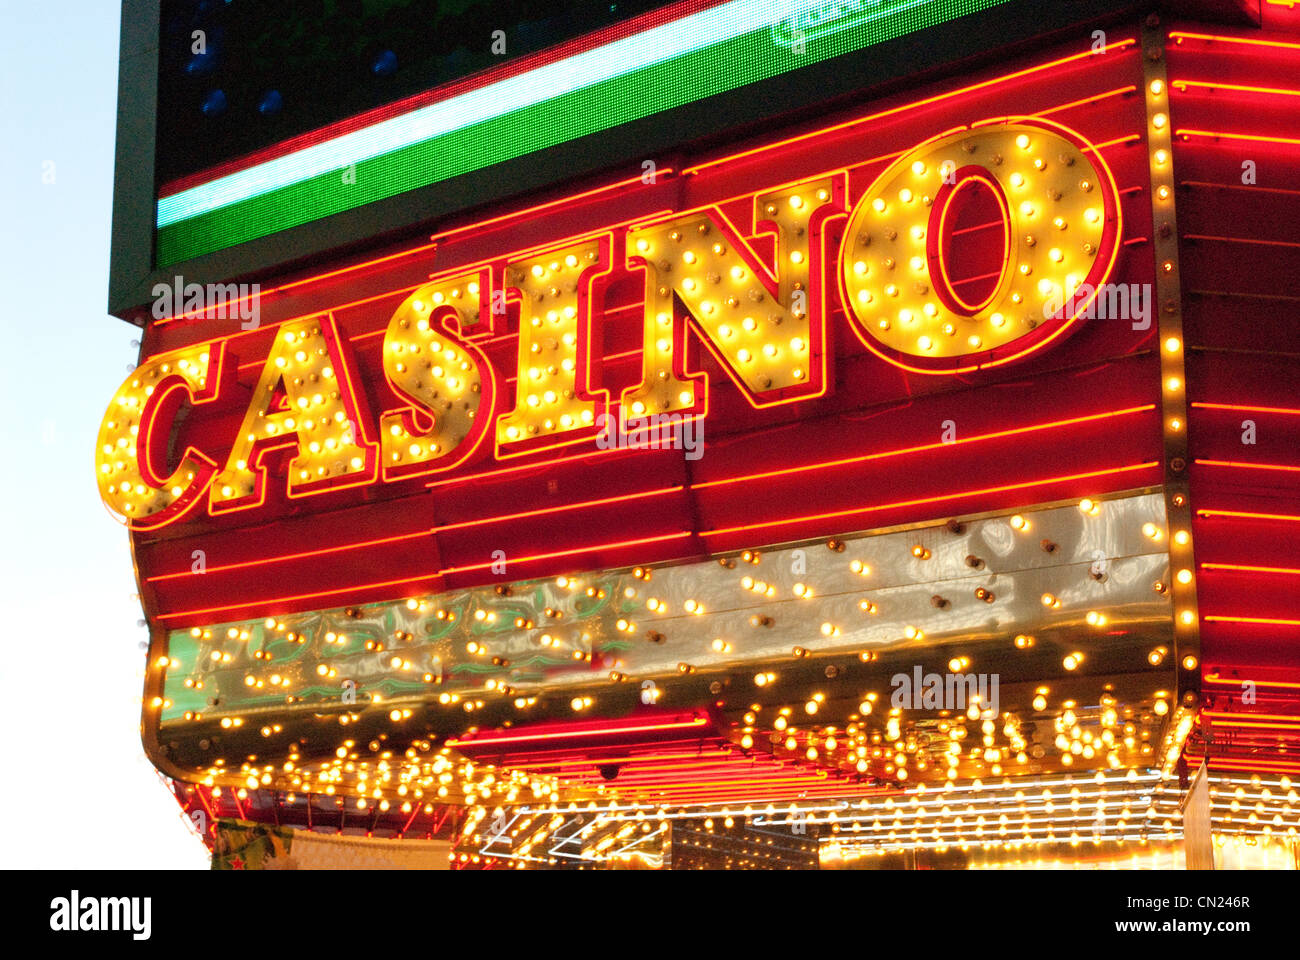 Casino sign, Las Vegas, USA Stock Photo